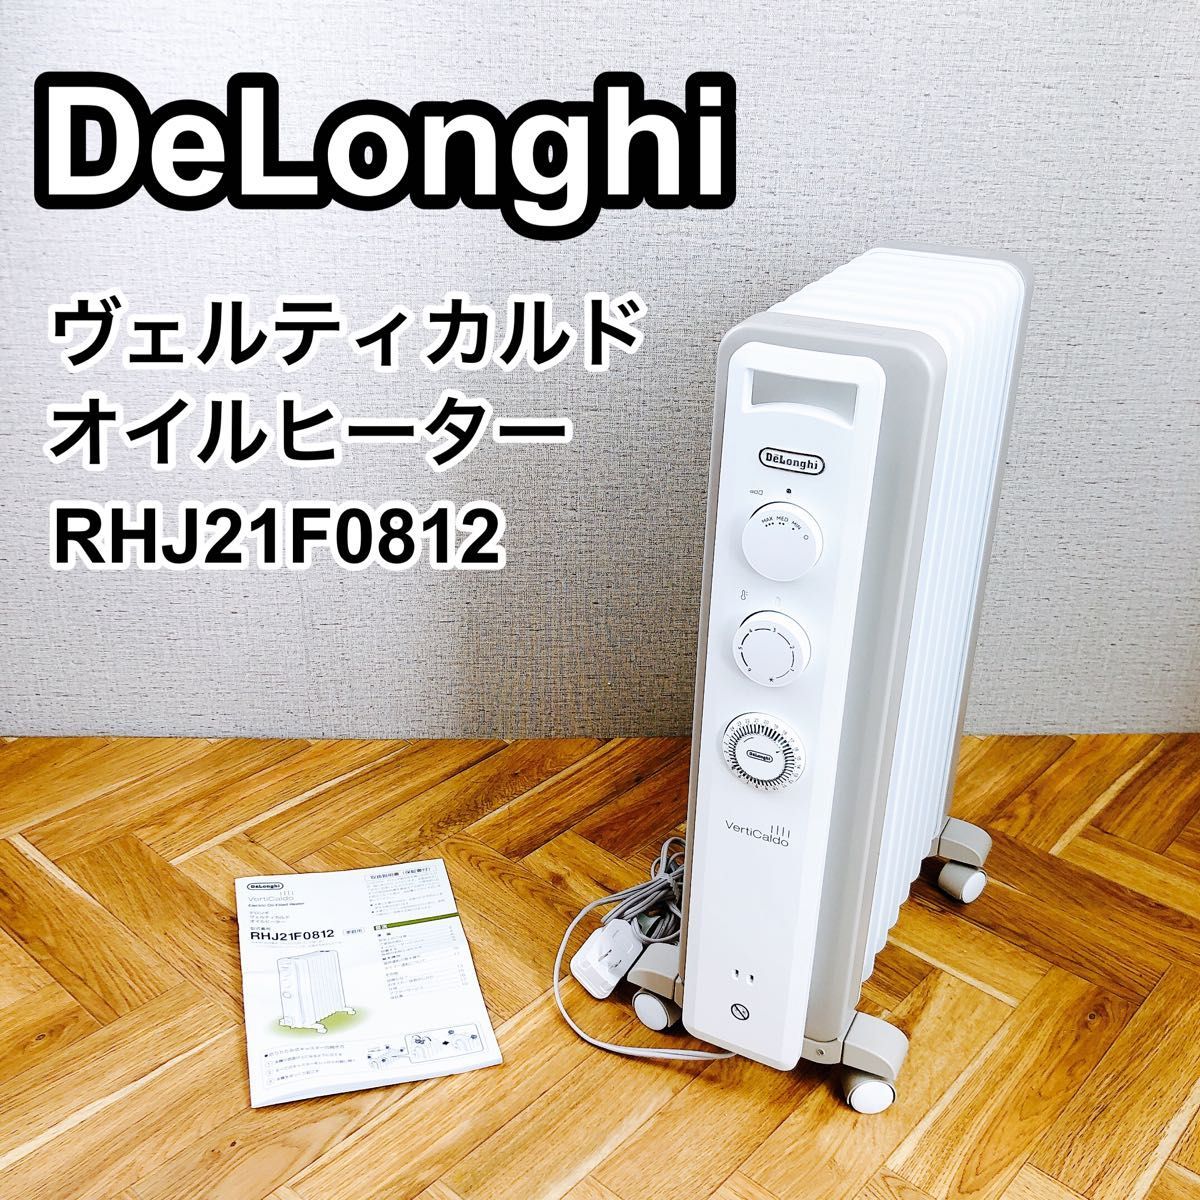 誠実 DeLonghi デロンギ RHJ21F0812 ヴェルティカルドオイルヒーター